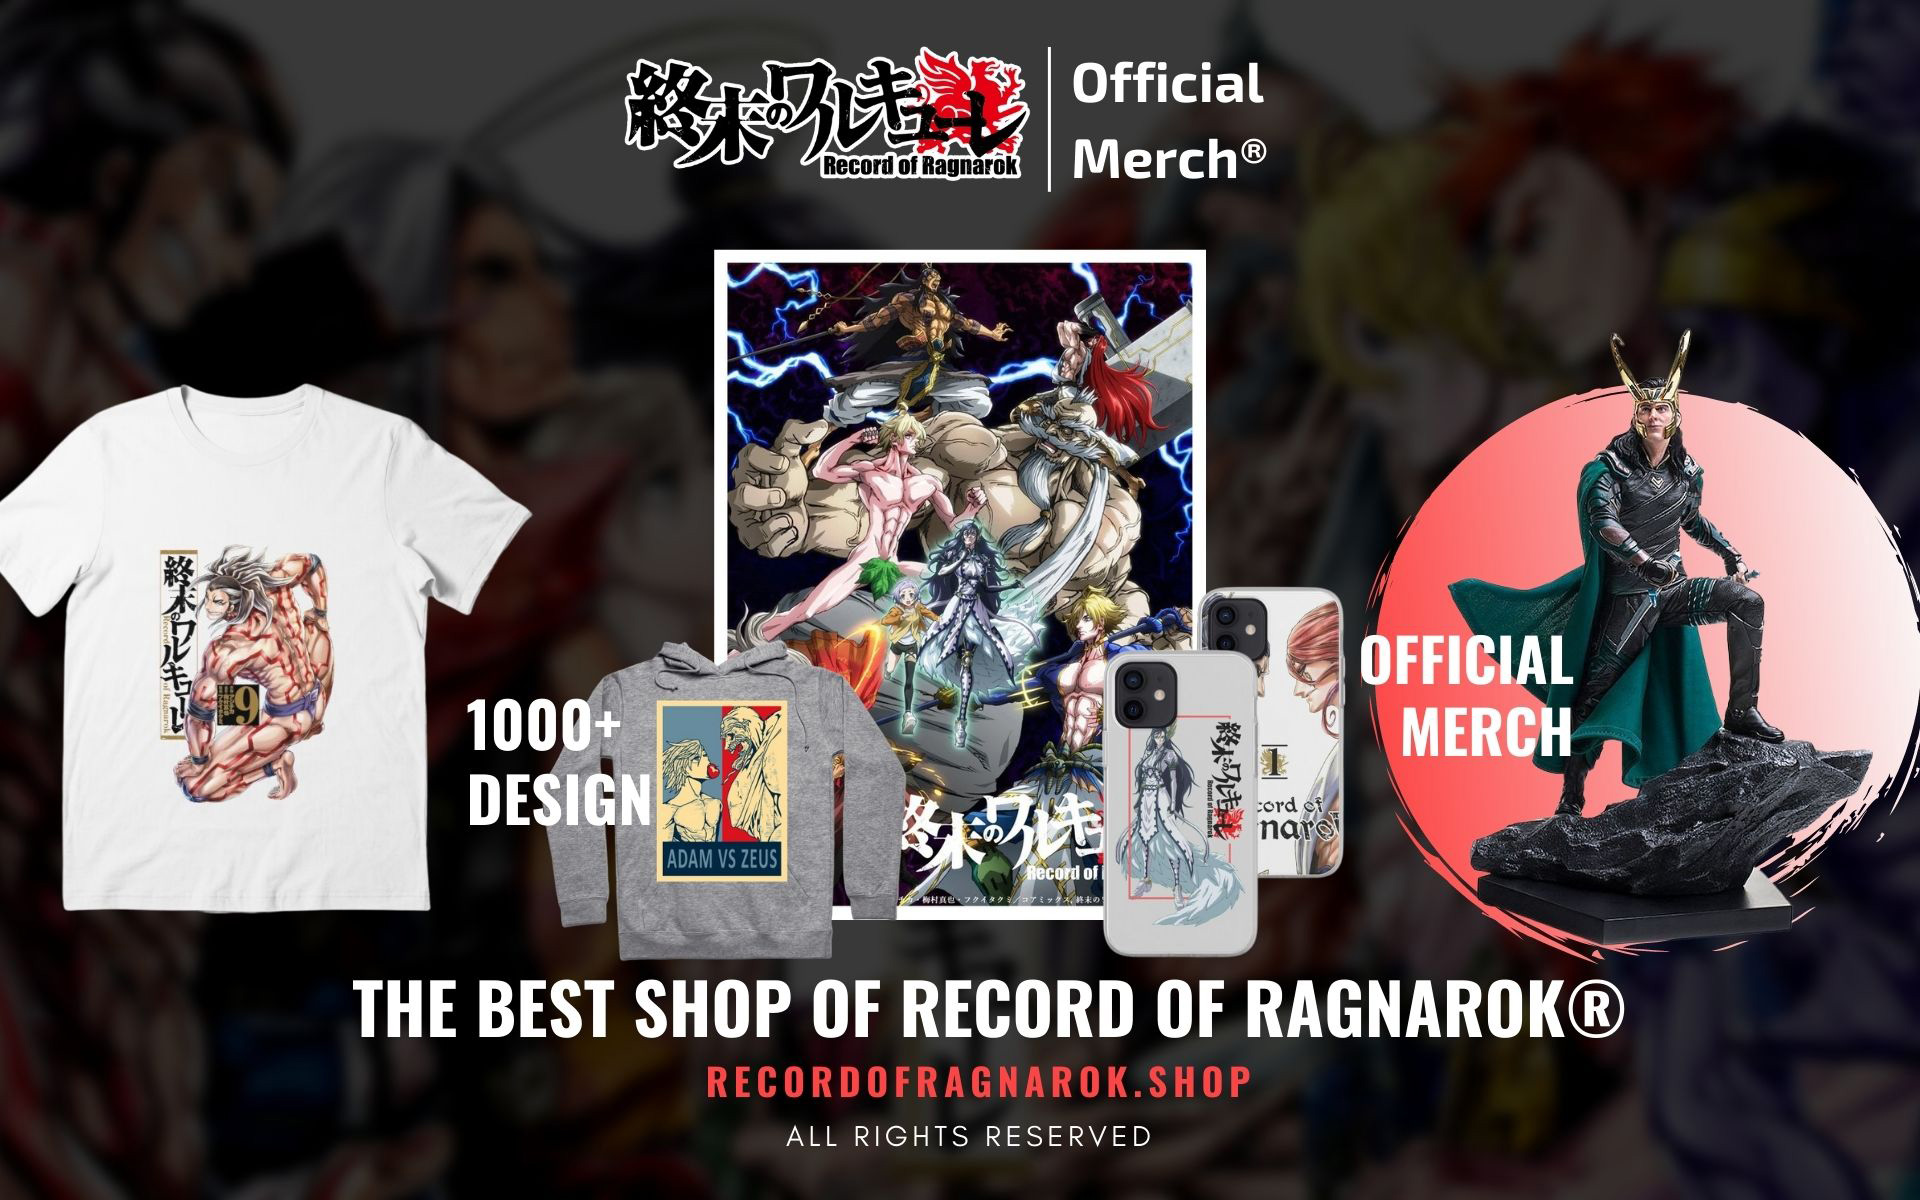 Record Of Ragnarok Shop Web Banner 1 - Record Of Ragnarok Merch